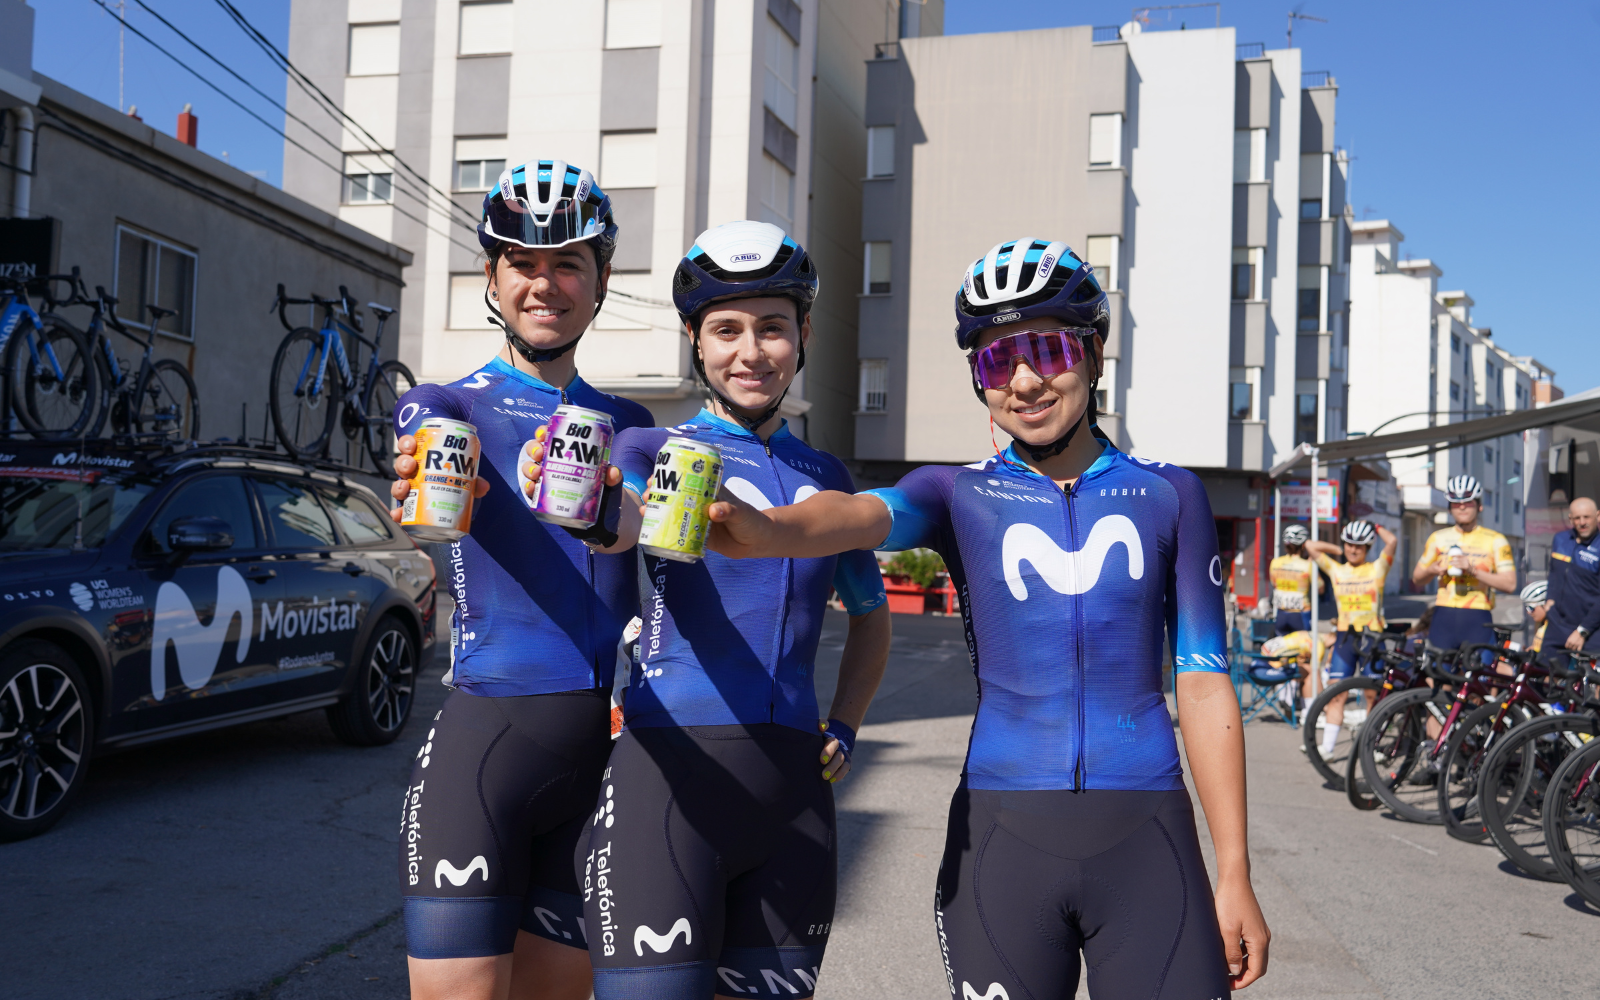 Las ciclistas del Movistar Team con la bebida de RAW